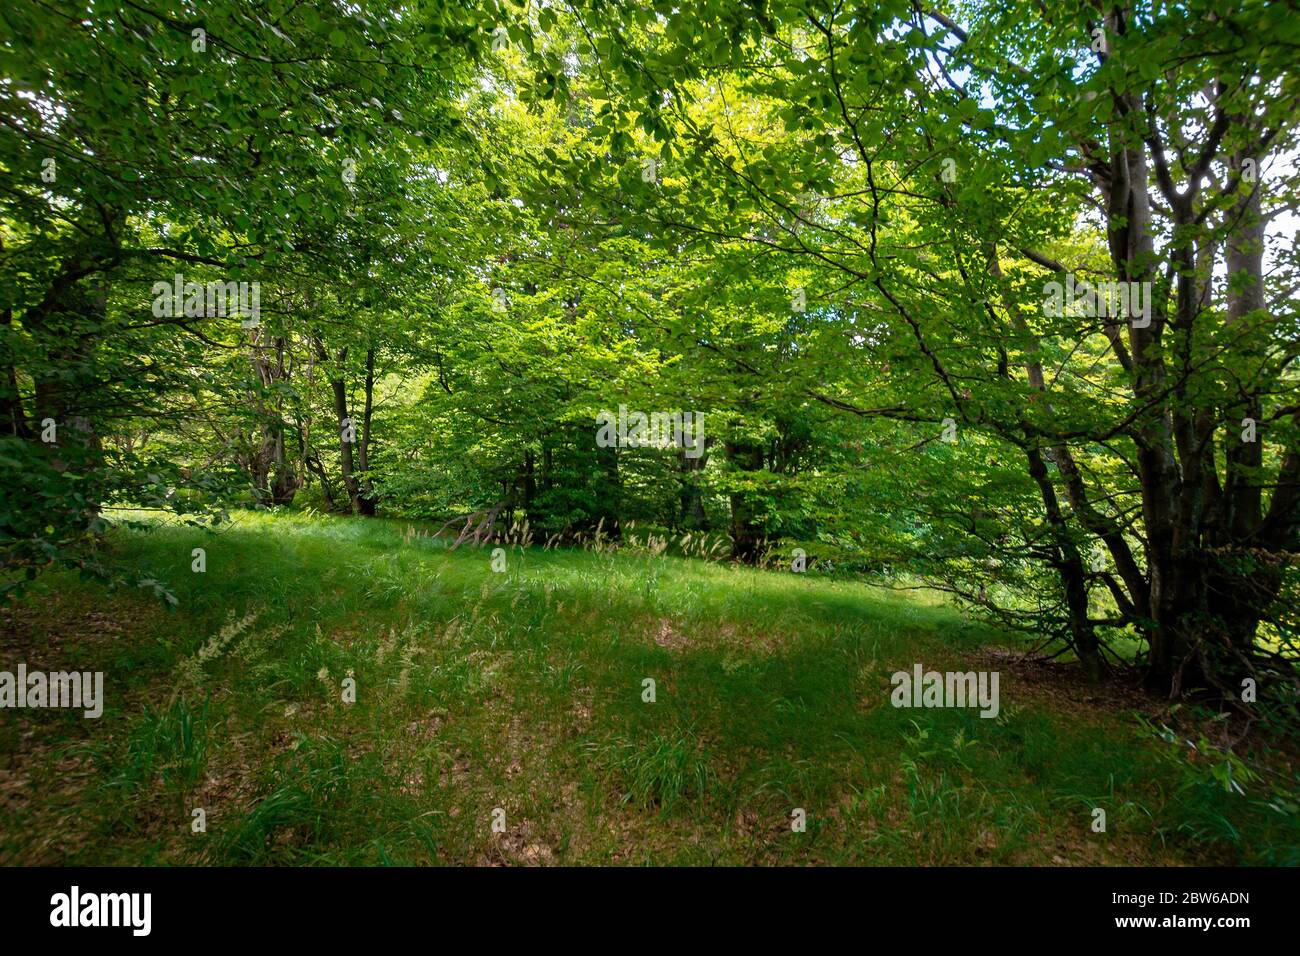 Buchenwald im Sommer. Bäume in üppig grünen Laub. Schöne Naturlandschaft Stockfoto